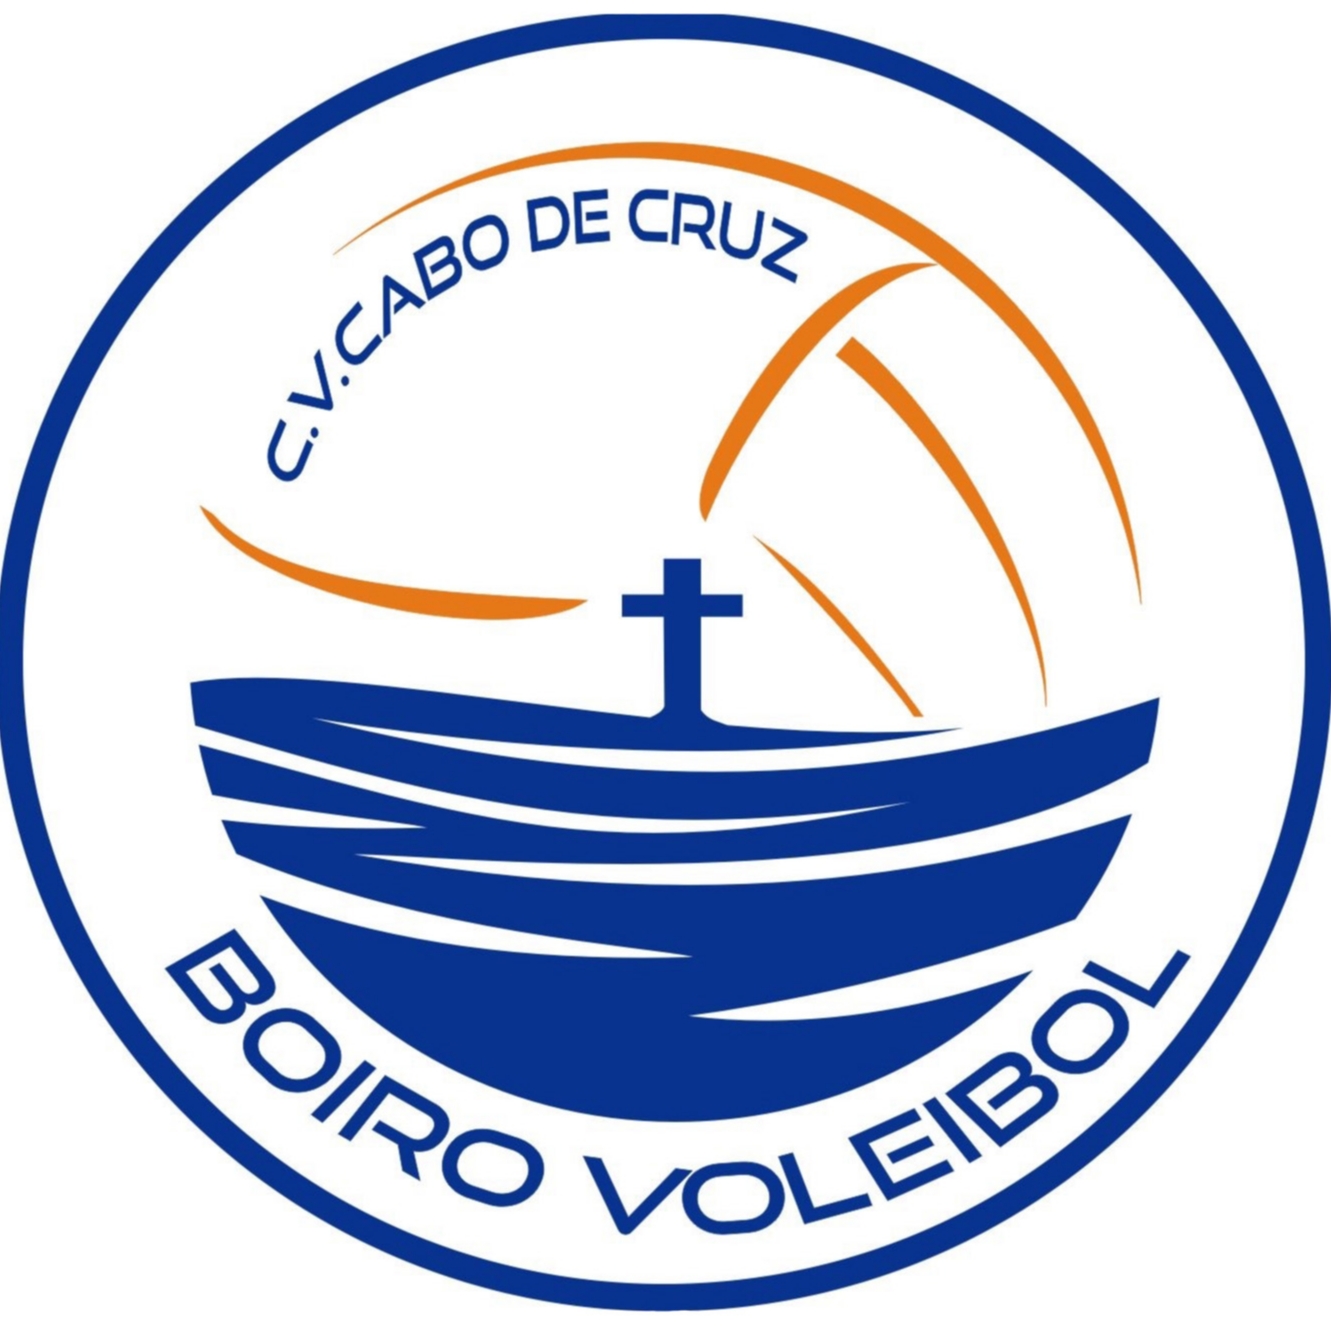 CLUB VOLEIBOL CABO DE CRUZ